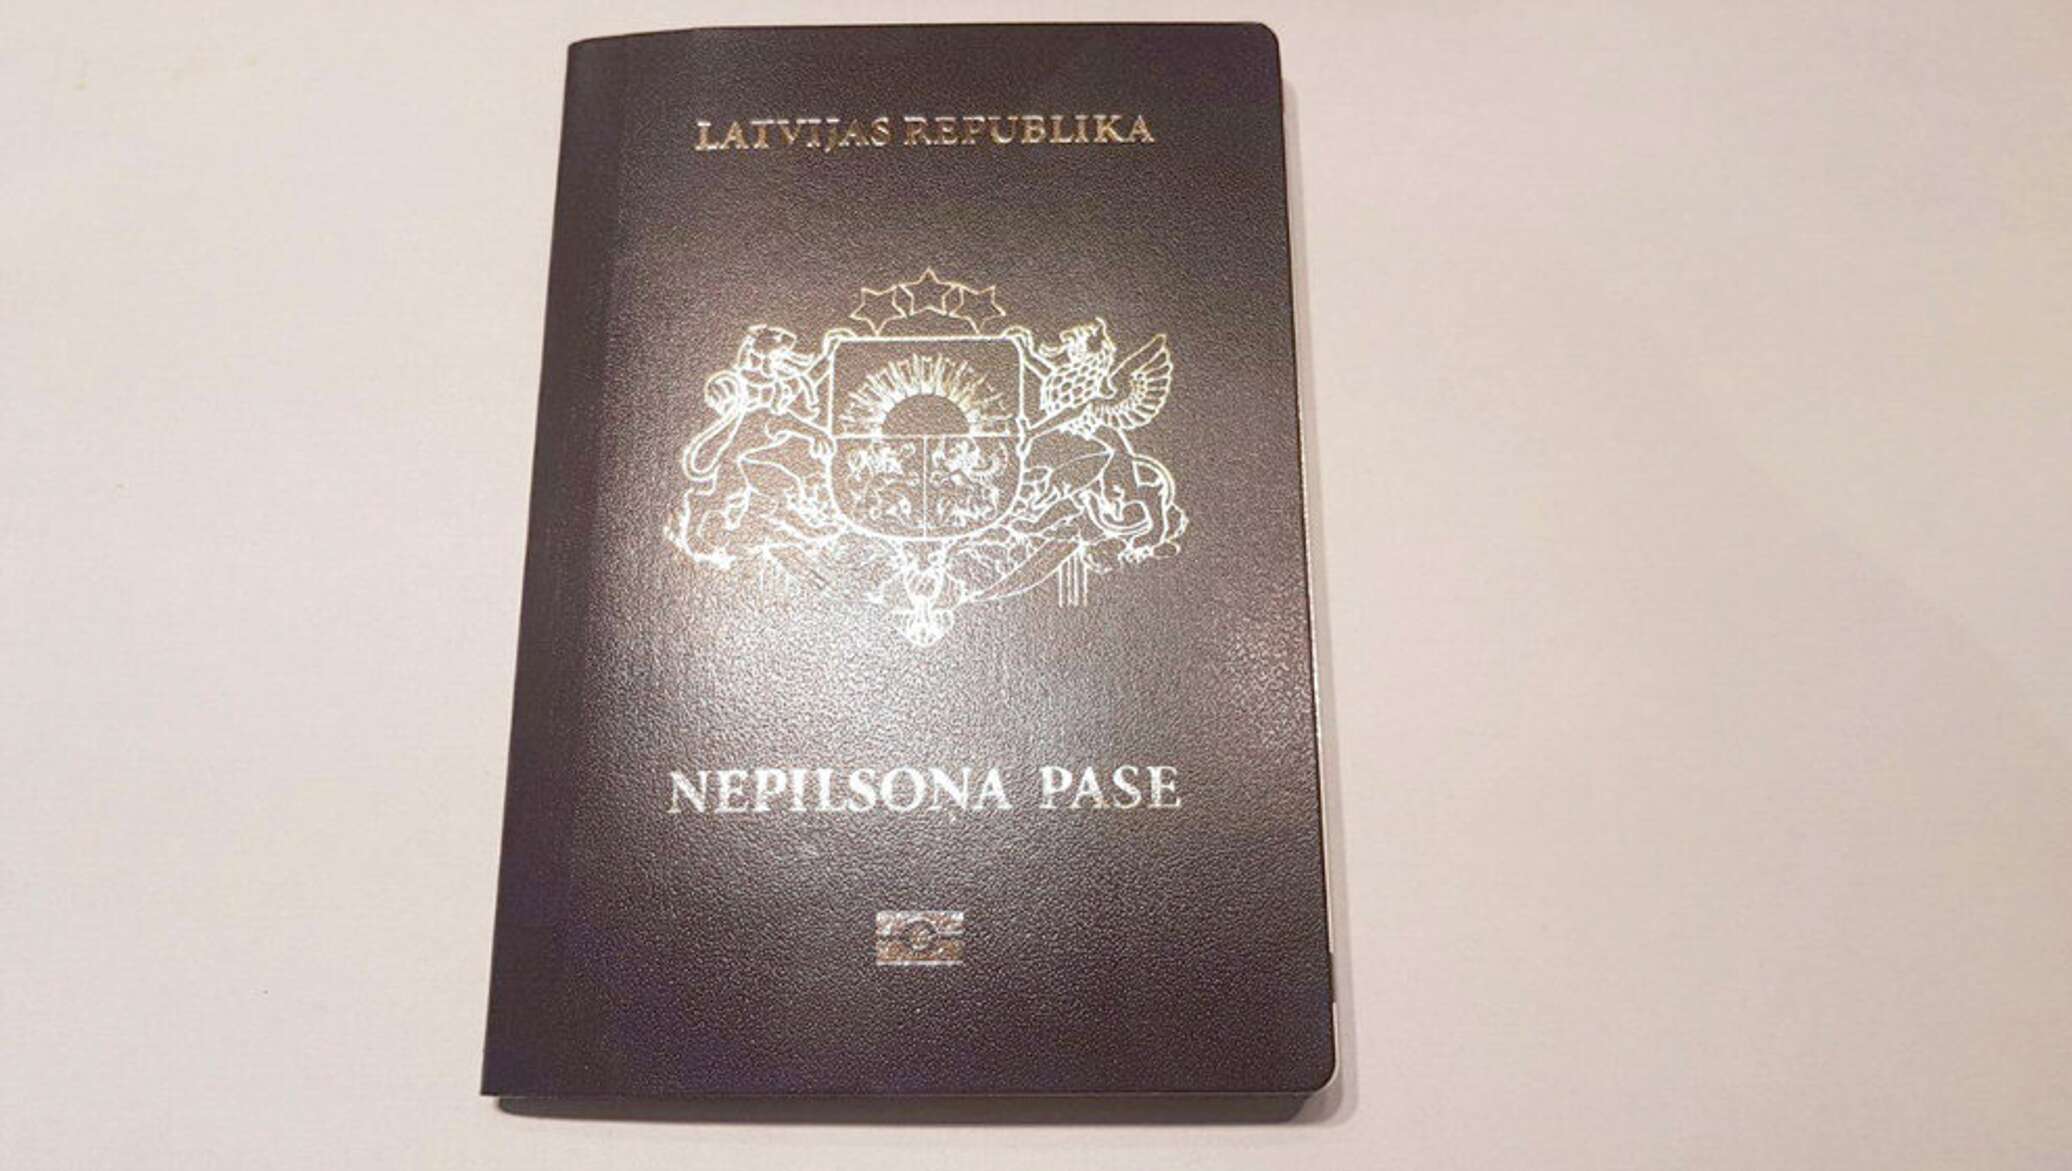 паспорт латвии